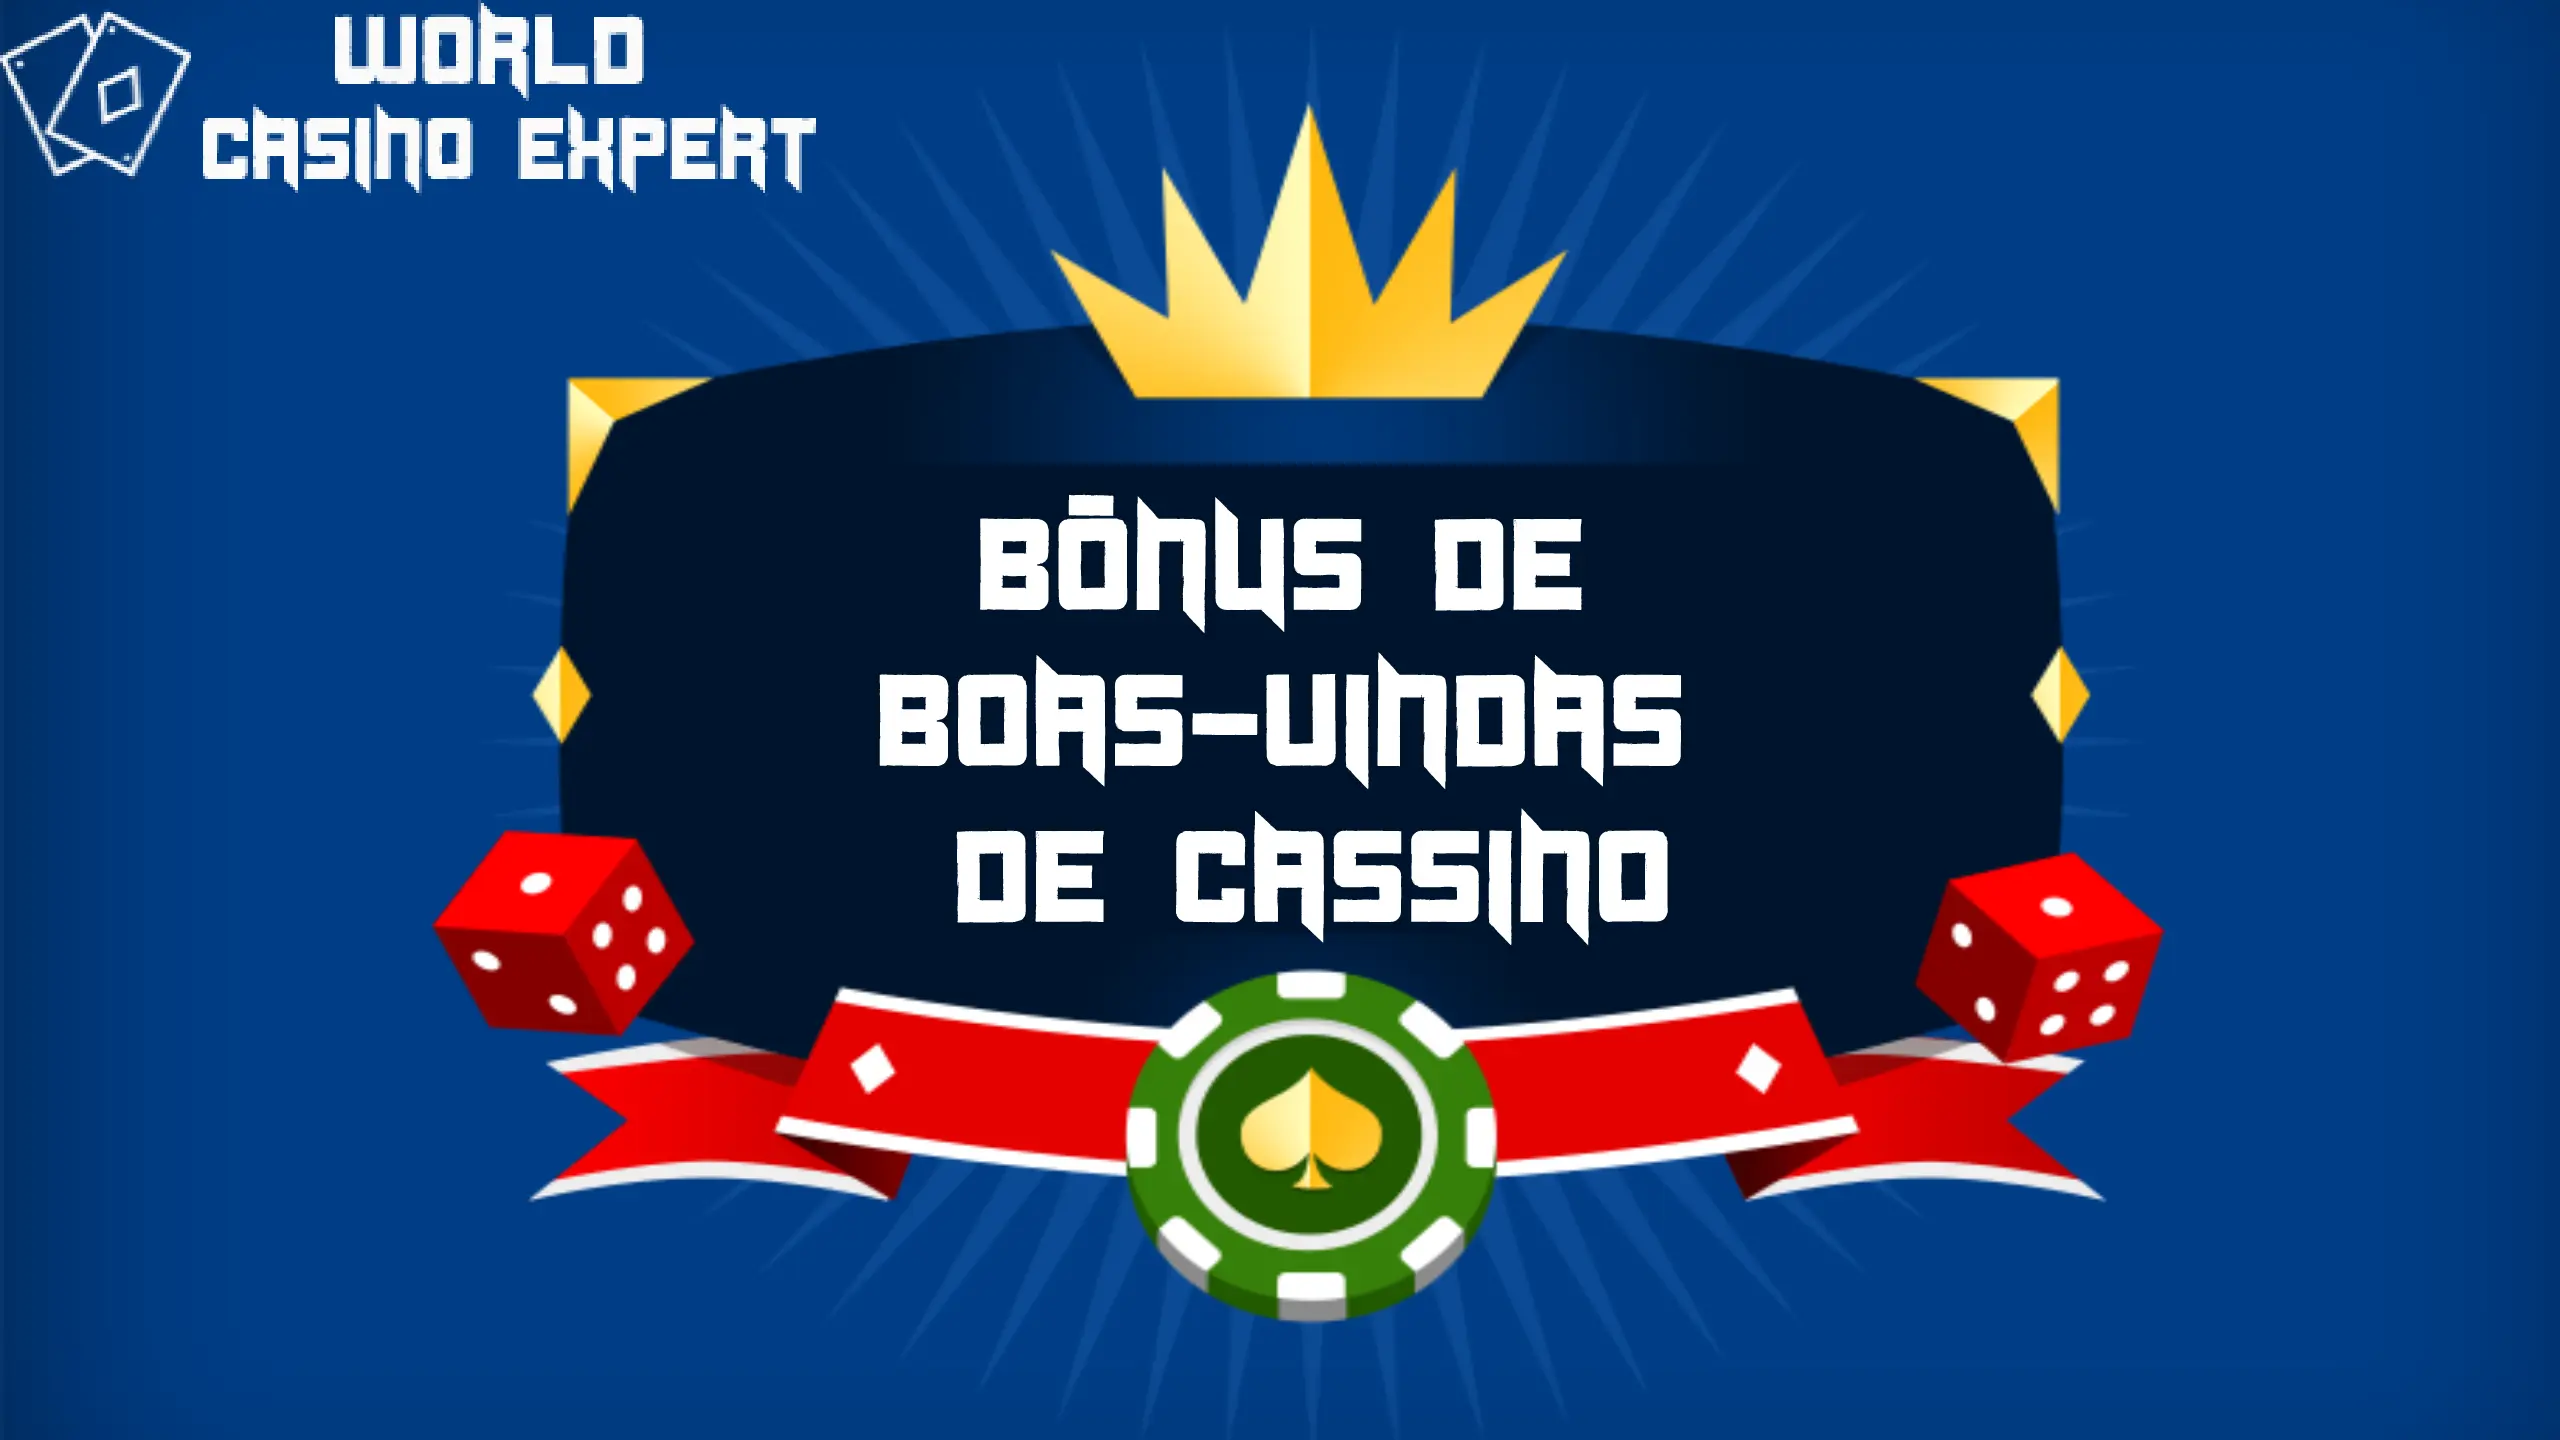 Bônus de Boas-vindas de Cassino | World Casino Expert Brasil